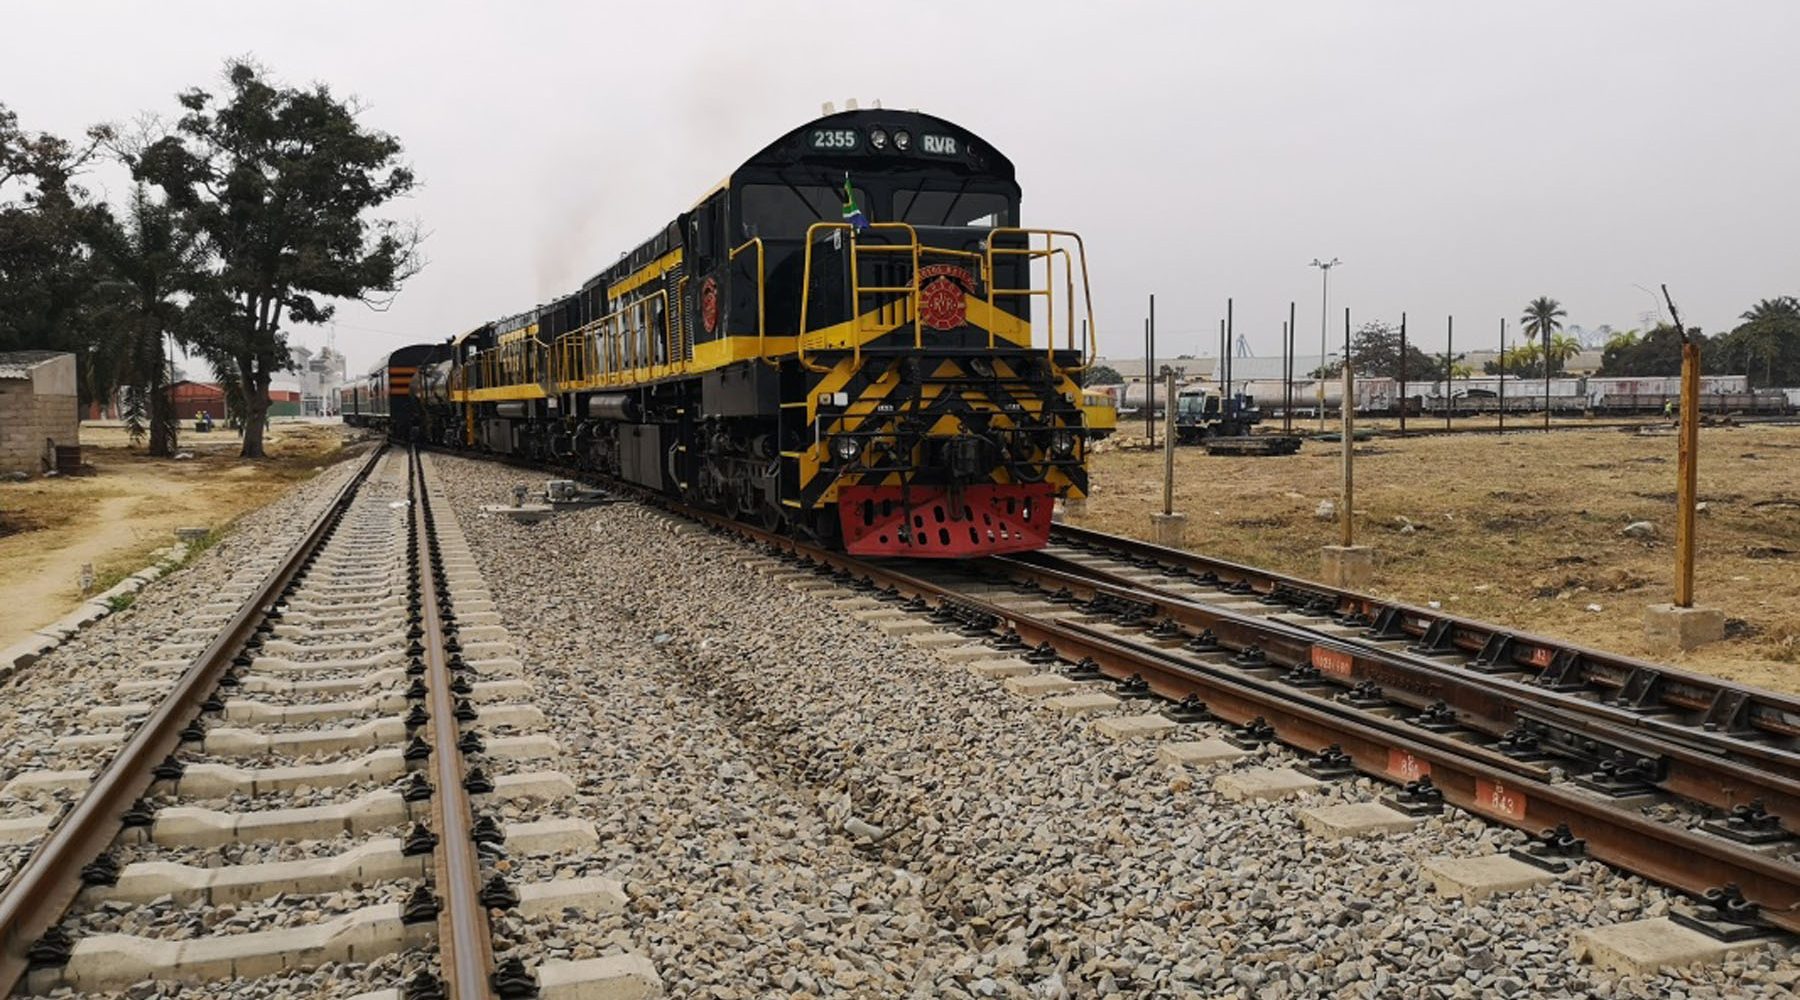 केही दिनभित्रै आइपुग्दै रेल सेट : दक्ष प्राविधिकसहित झण्डै २०० कर्मचारीको प्रस्ताव